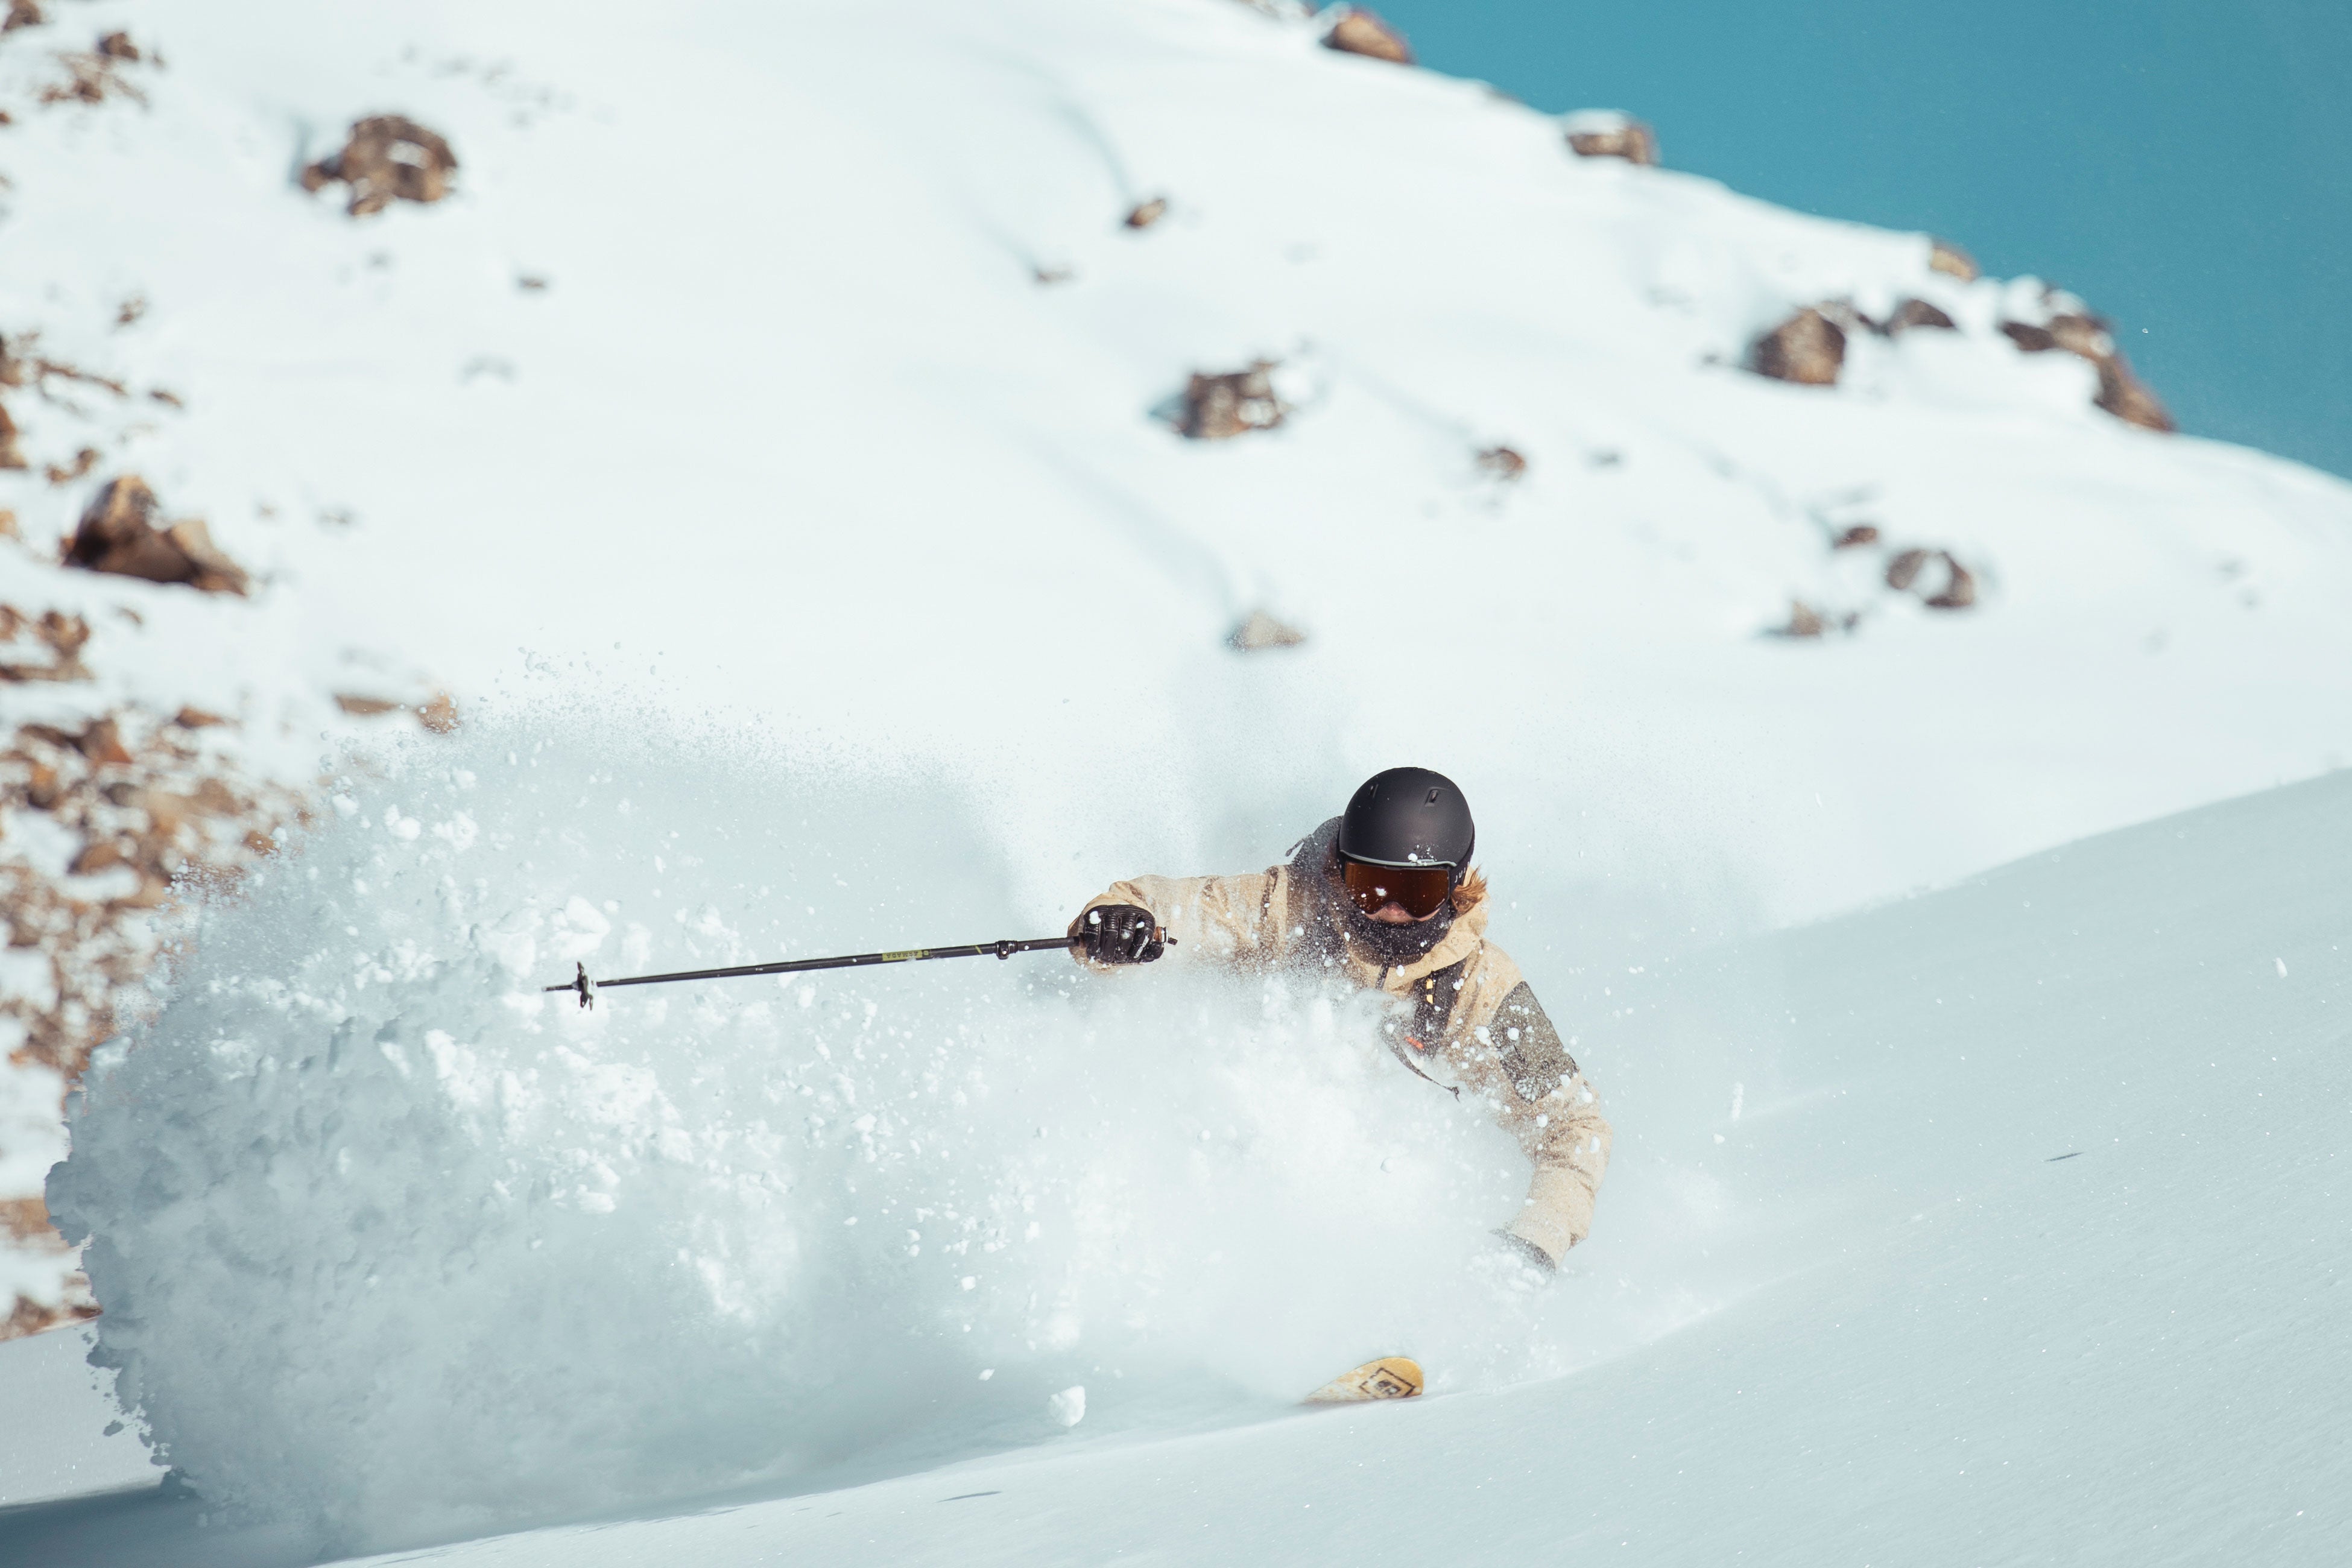 Konsti Ottner Skiing Powder in his Julbo Goggles